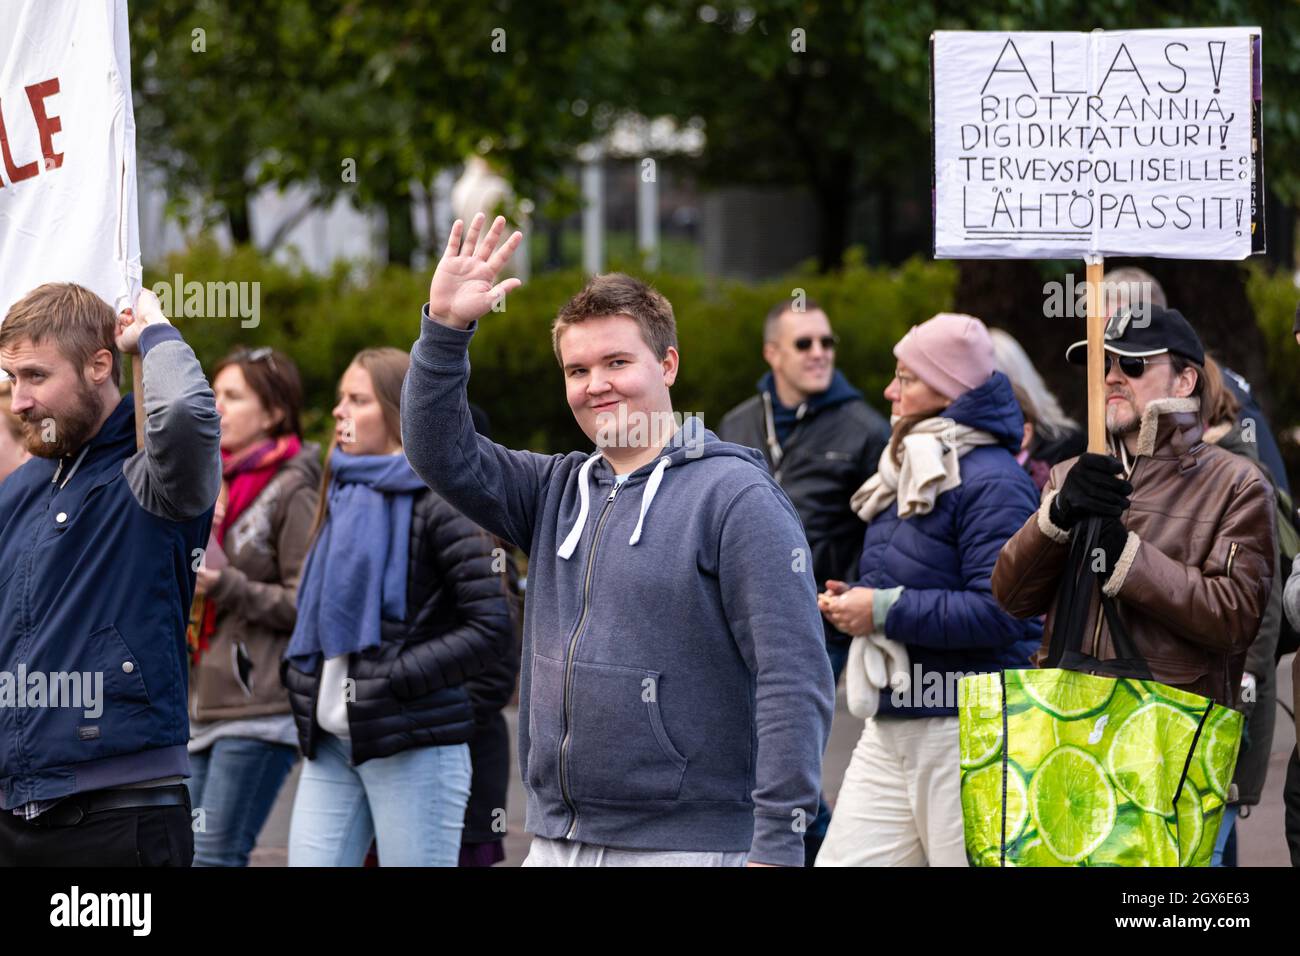 In Helsinki, Finnland, marschieren Menschen auf einer Demonstration gegen die Impfung von Kindern und die Einführung von Covid-Pässen Stockfoto